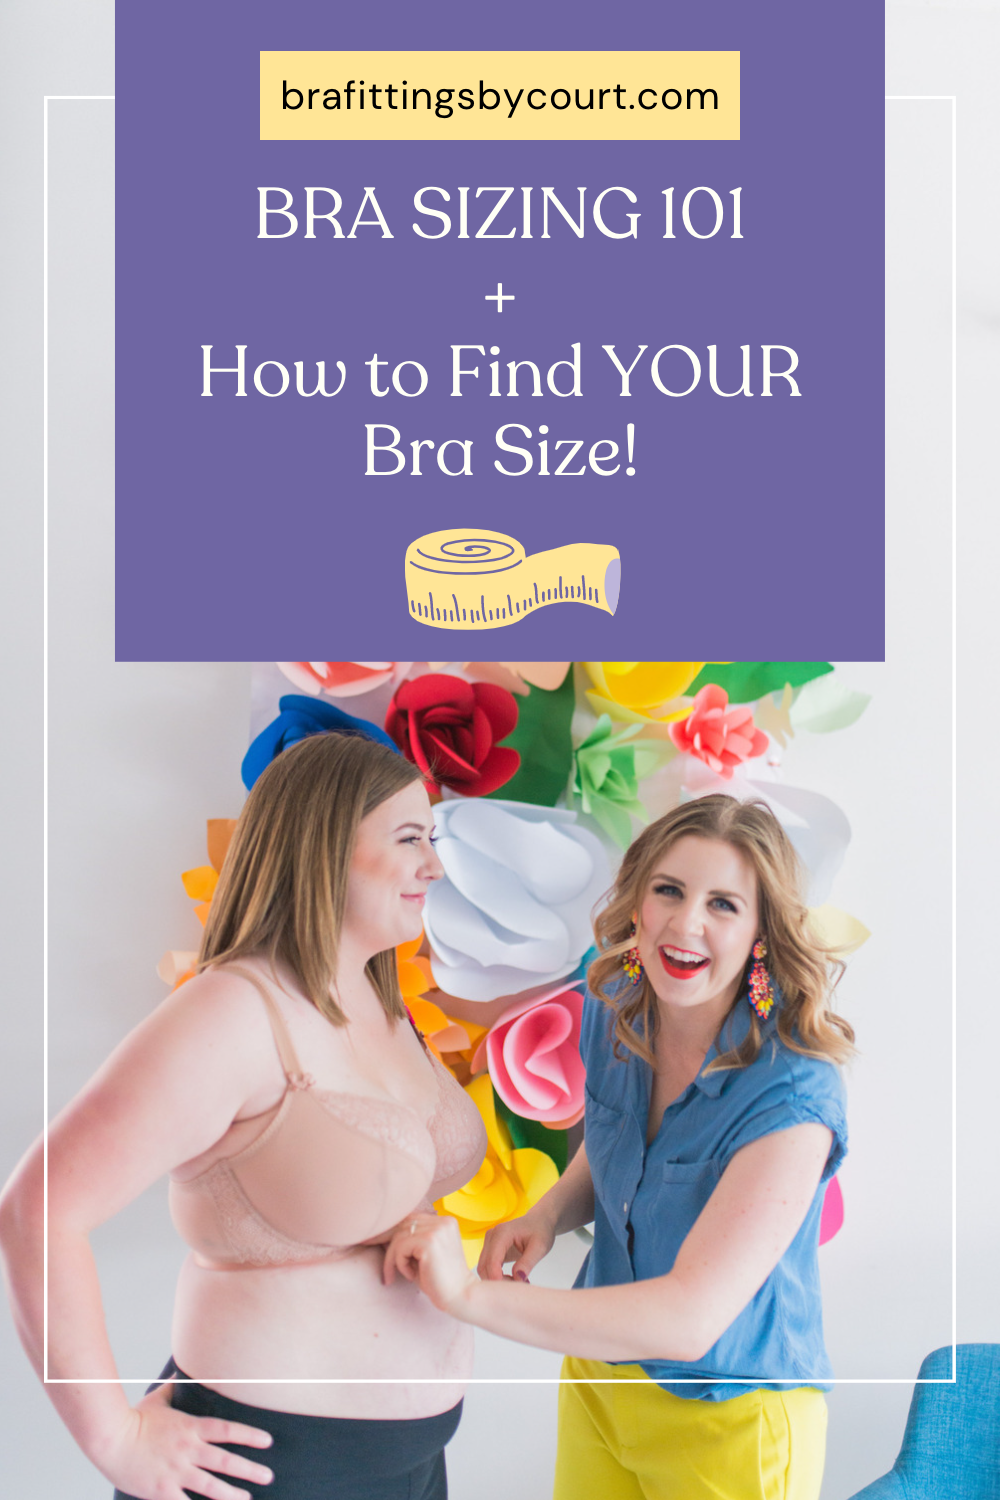 How to Determine Bra Size, Bra Fitting